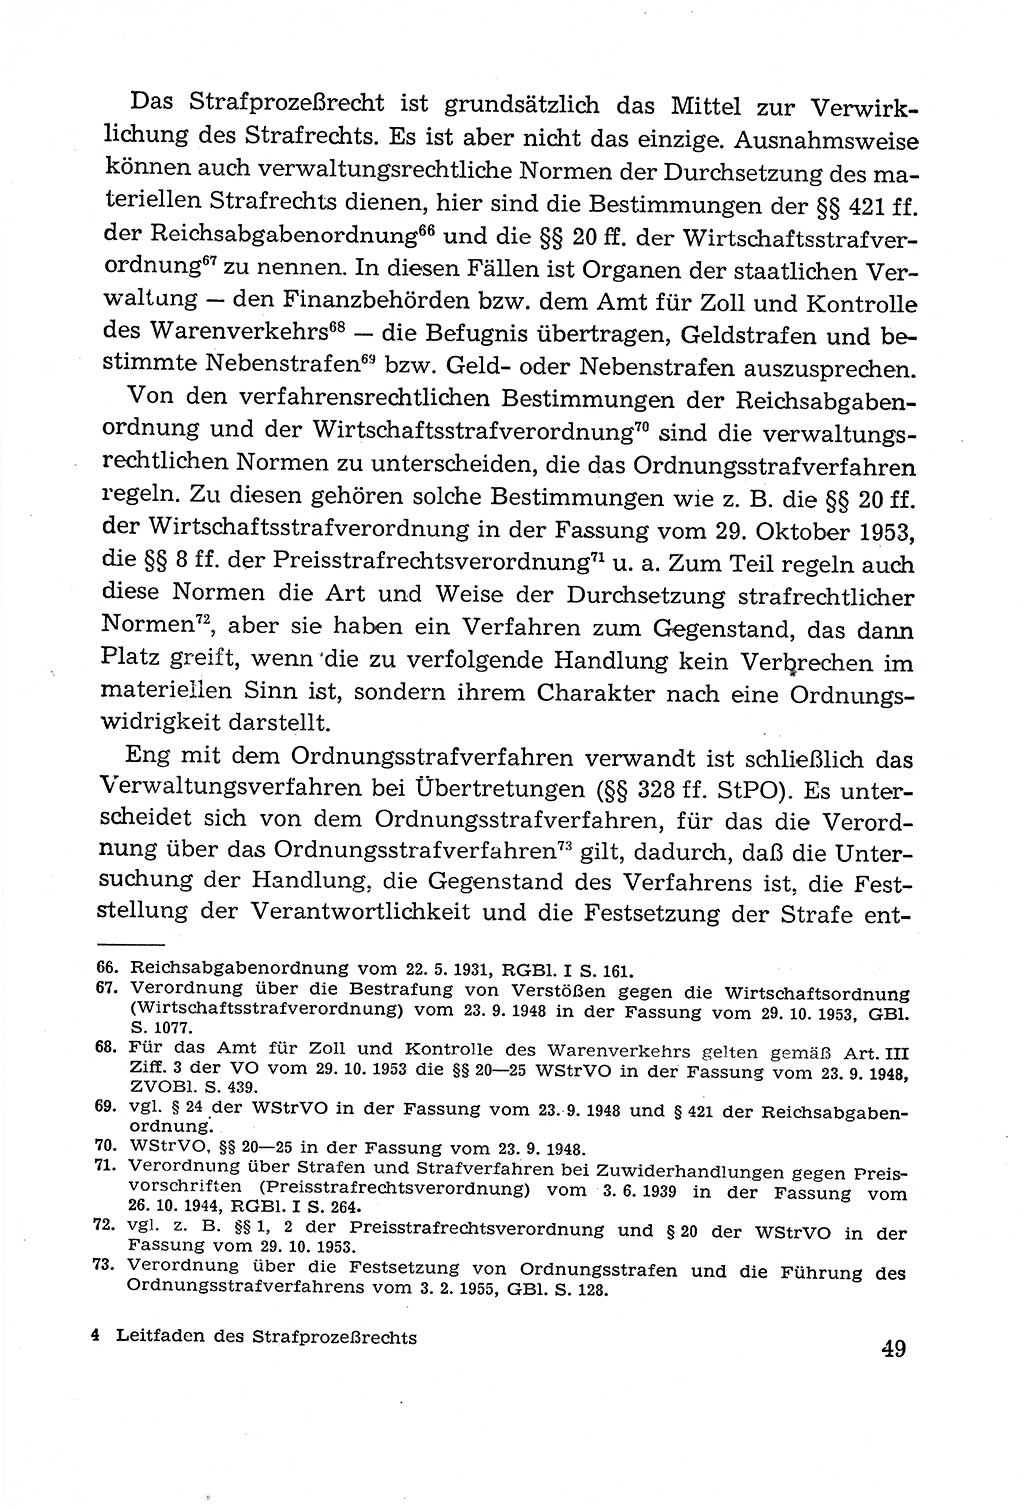 Leitfaden des Strafprozeßrechts der Deutschen Demokratischen Republik (DDR) 1959, Seite 49 (LF StPR DDR 1959, S. 49)